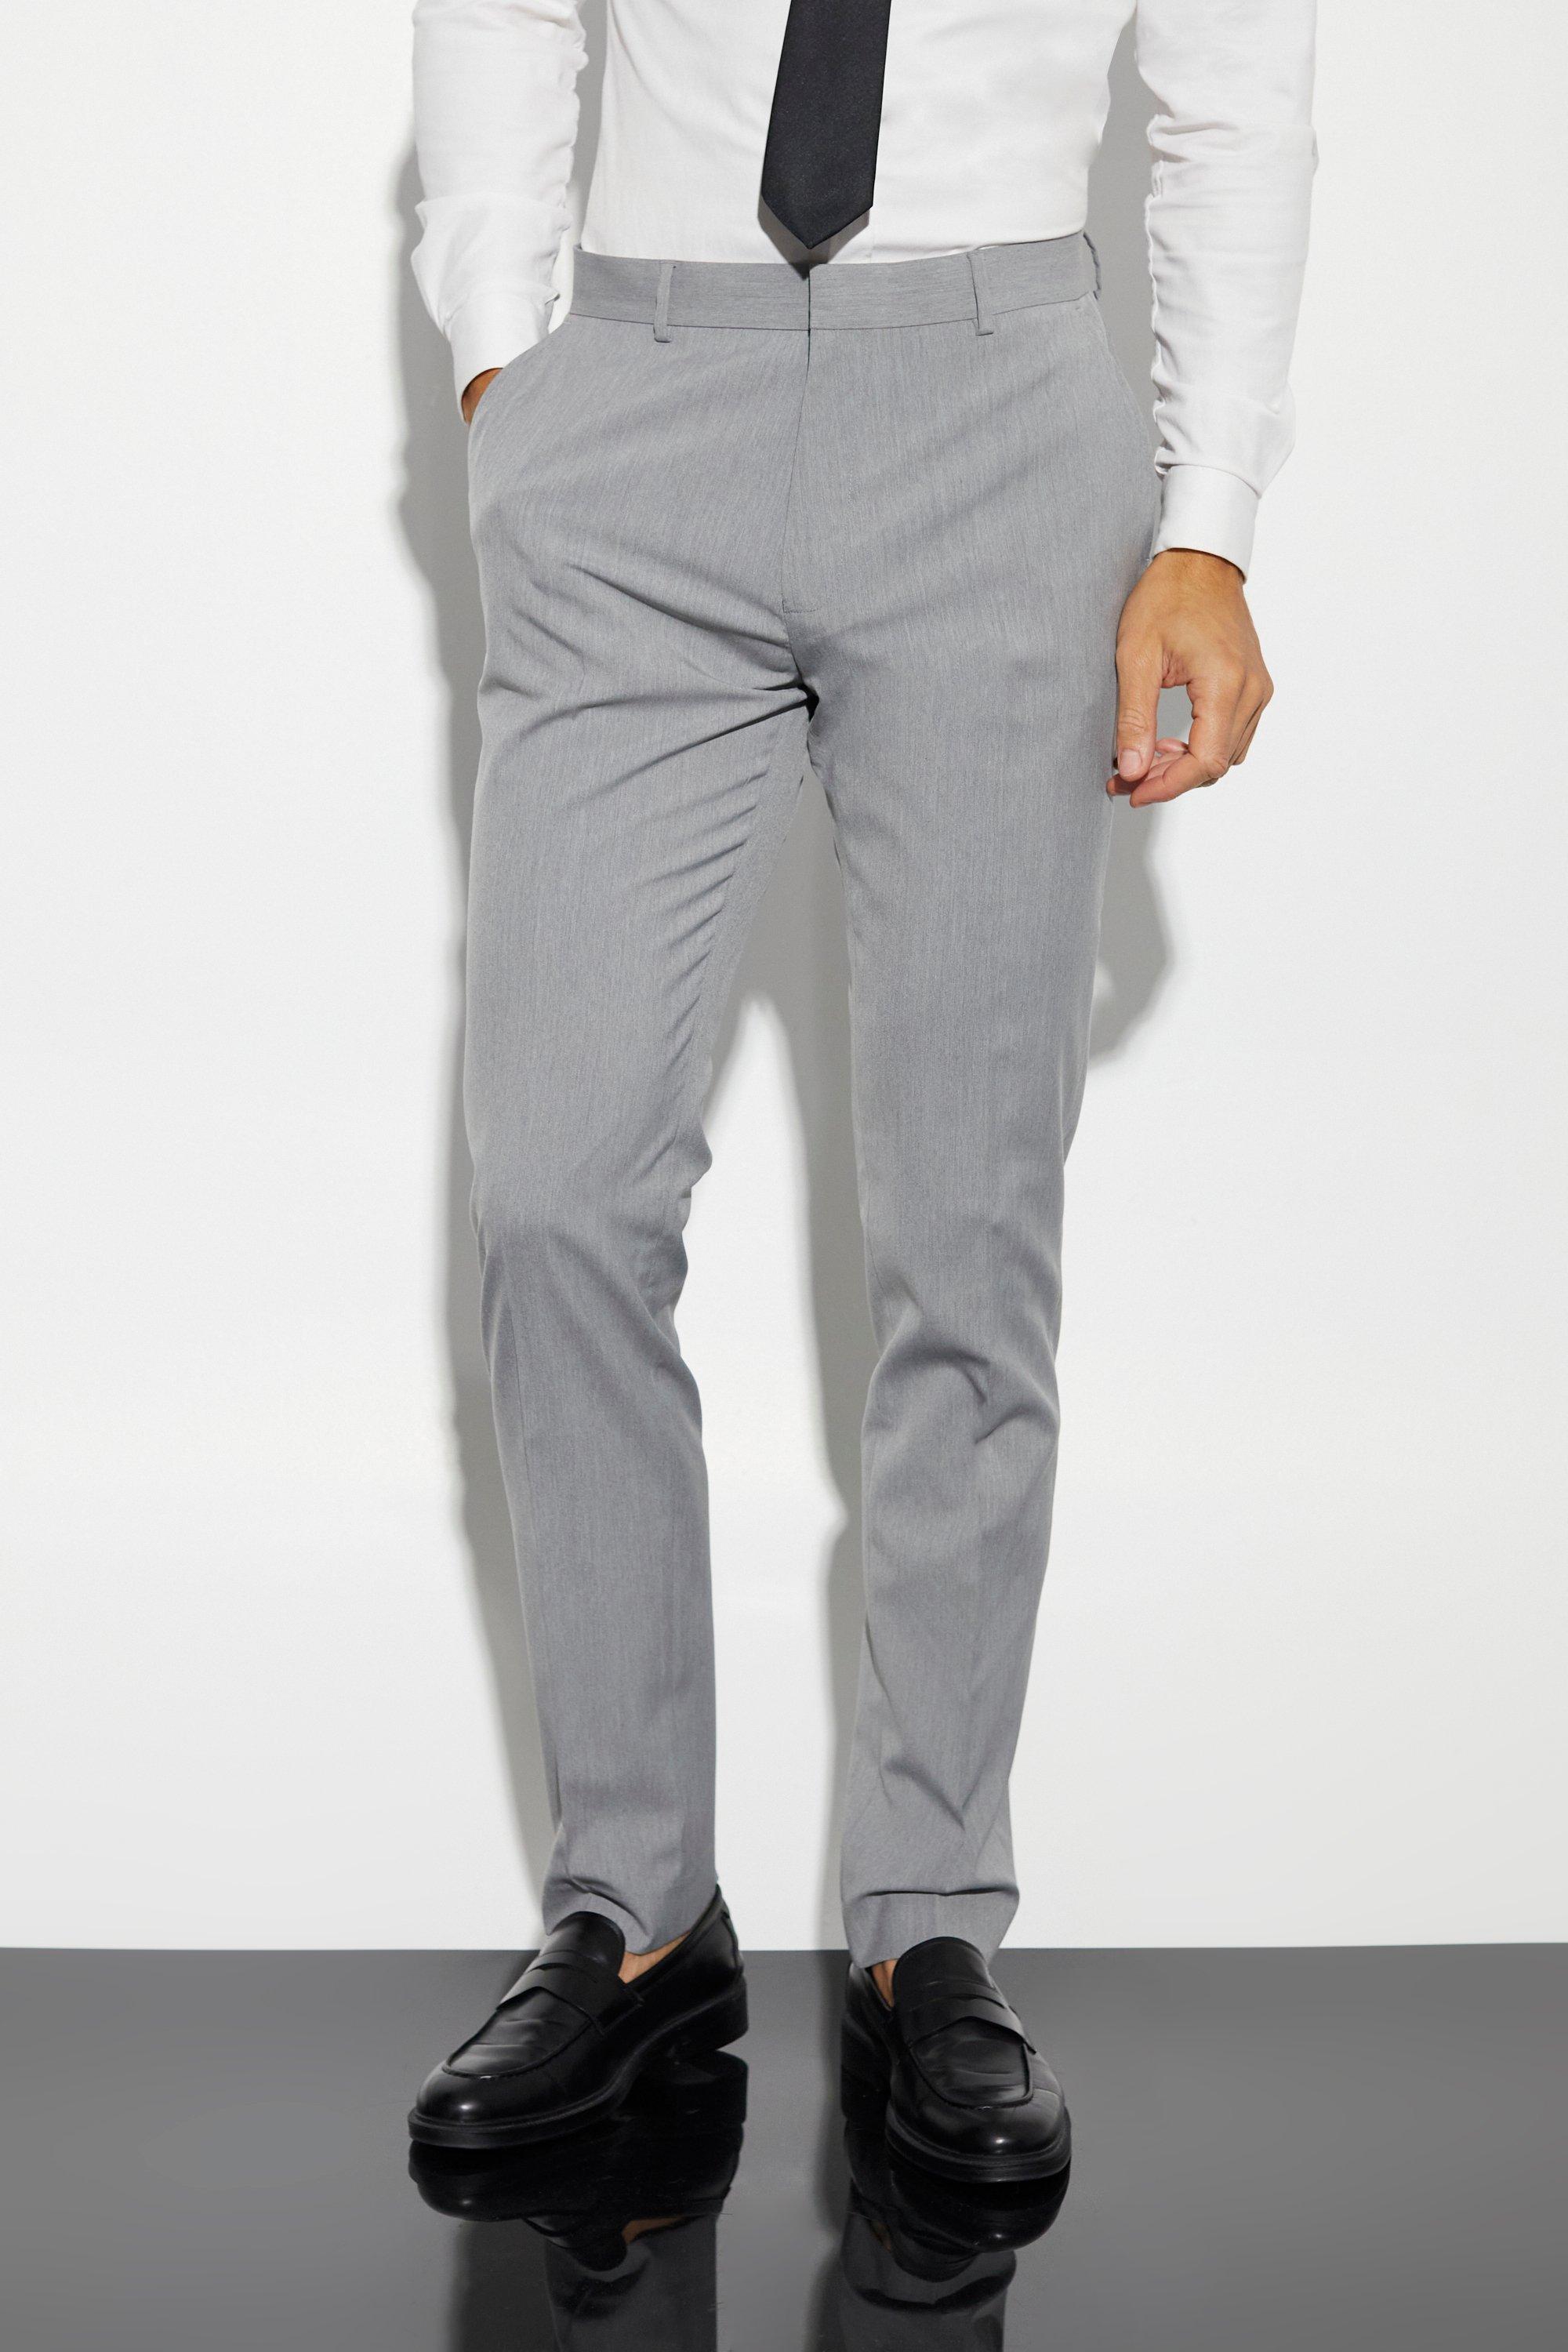 tall - pantalon de costume slim homme - gris - 34, gris